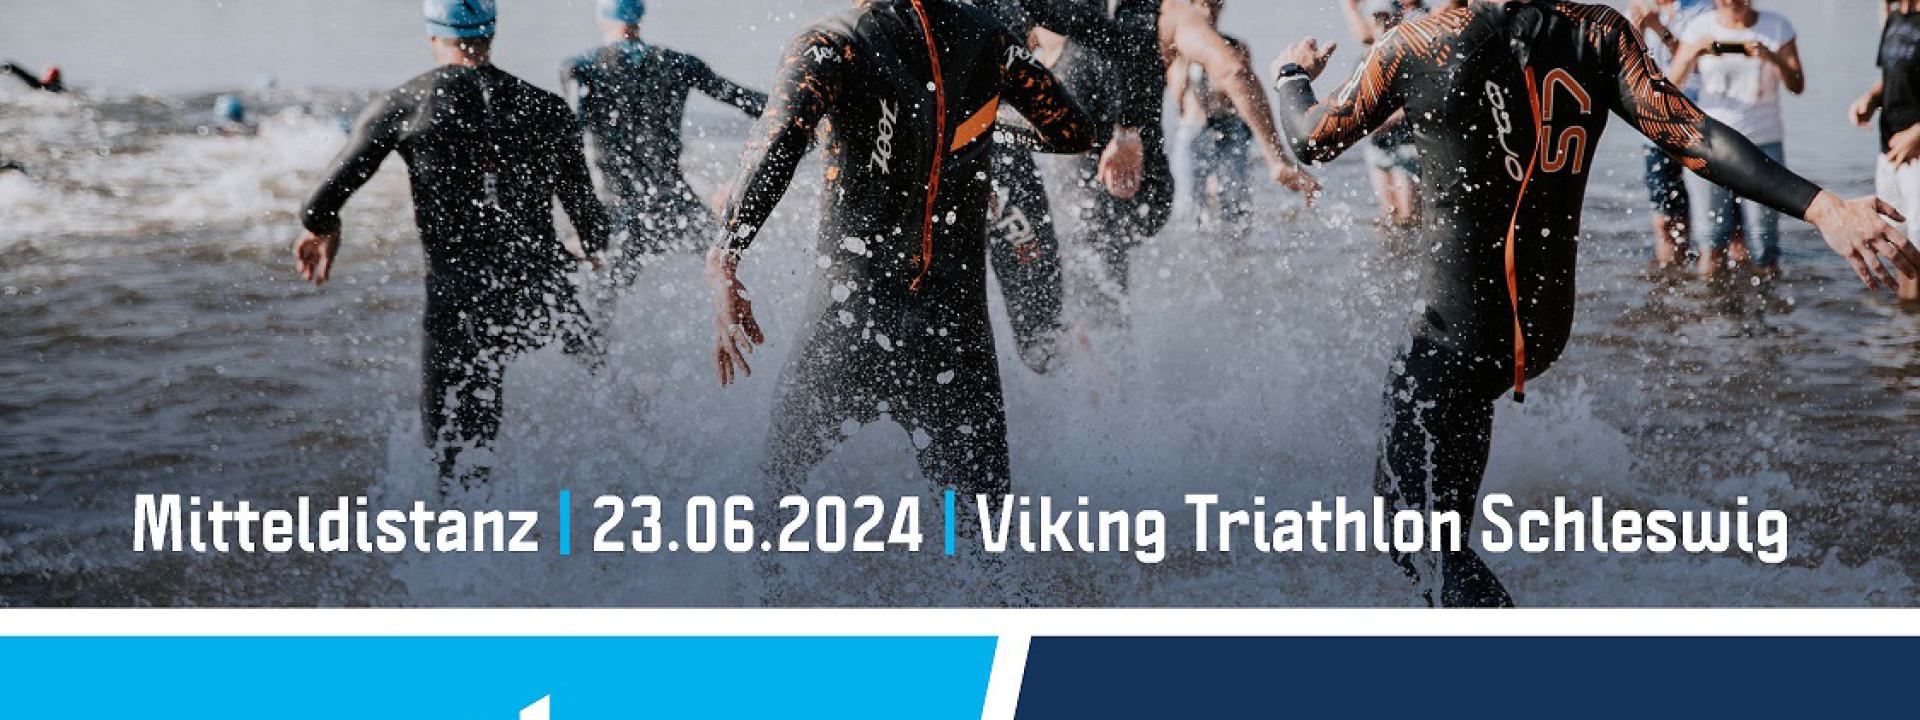 Viking-Triathlon